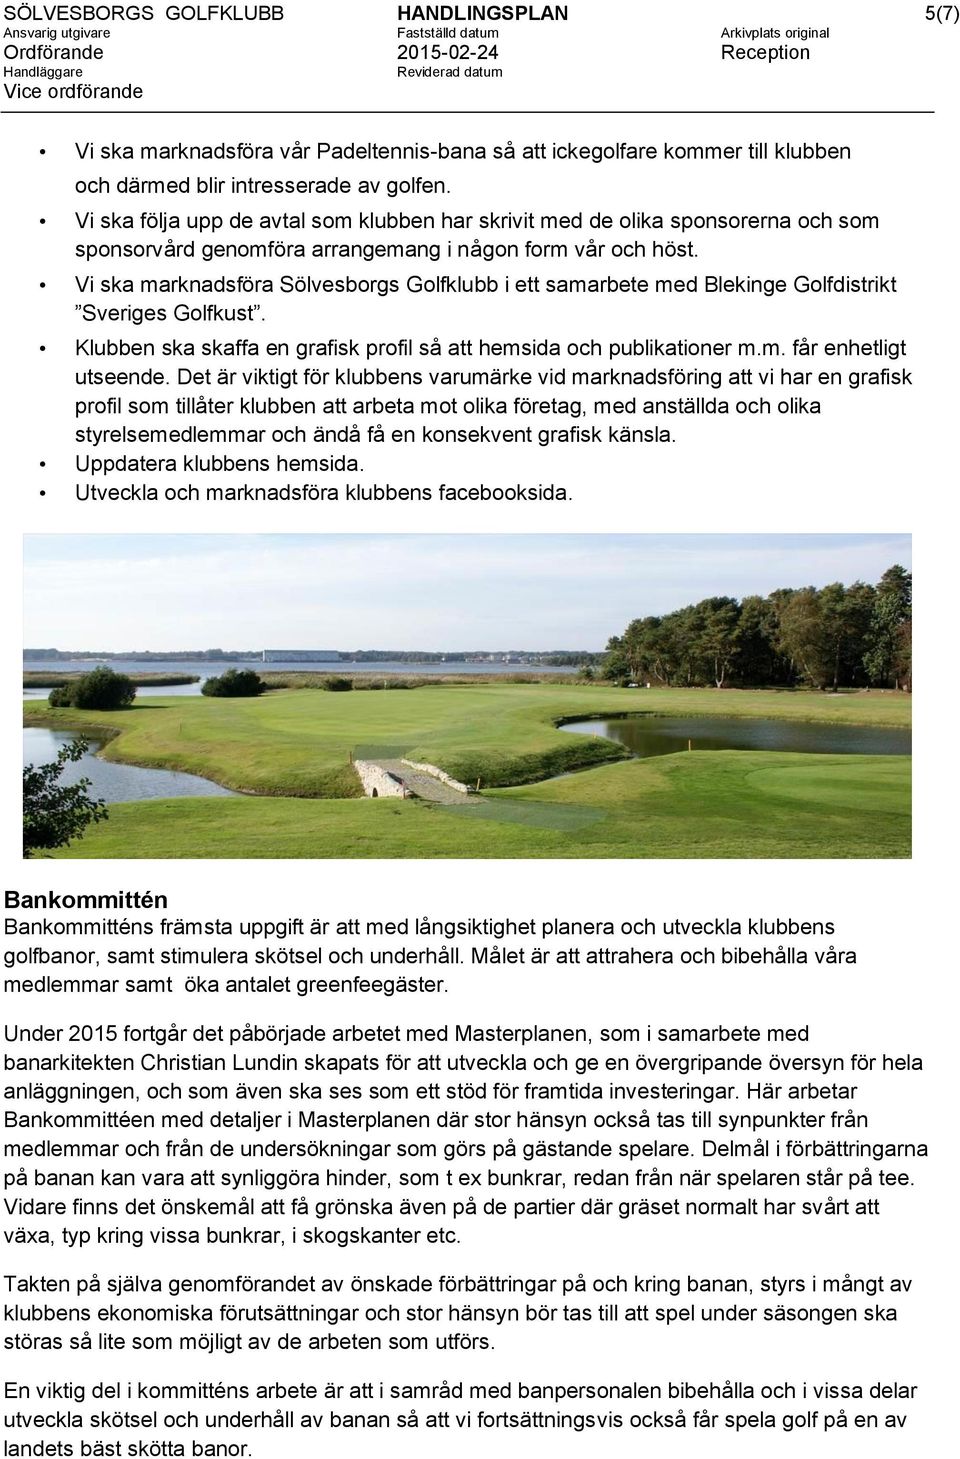 Vi ska marknadsföra Sölvesborgs Golfklubb i ett samarbete med Blekinge Golfdistrikt Sveriges Golfkust. Klubben ska skaffa en grafisk profil så att hemsida och publikationer m.m. får enhetligt utseende.